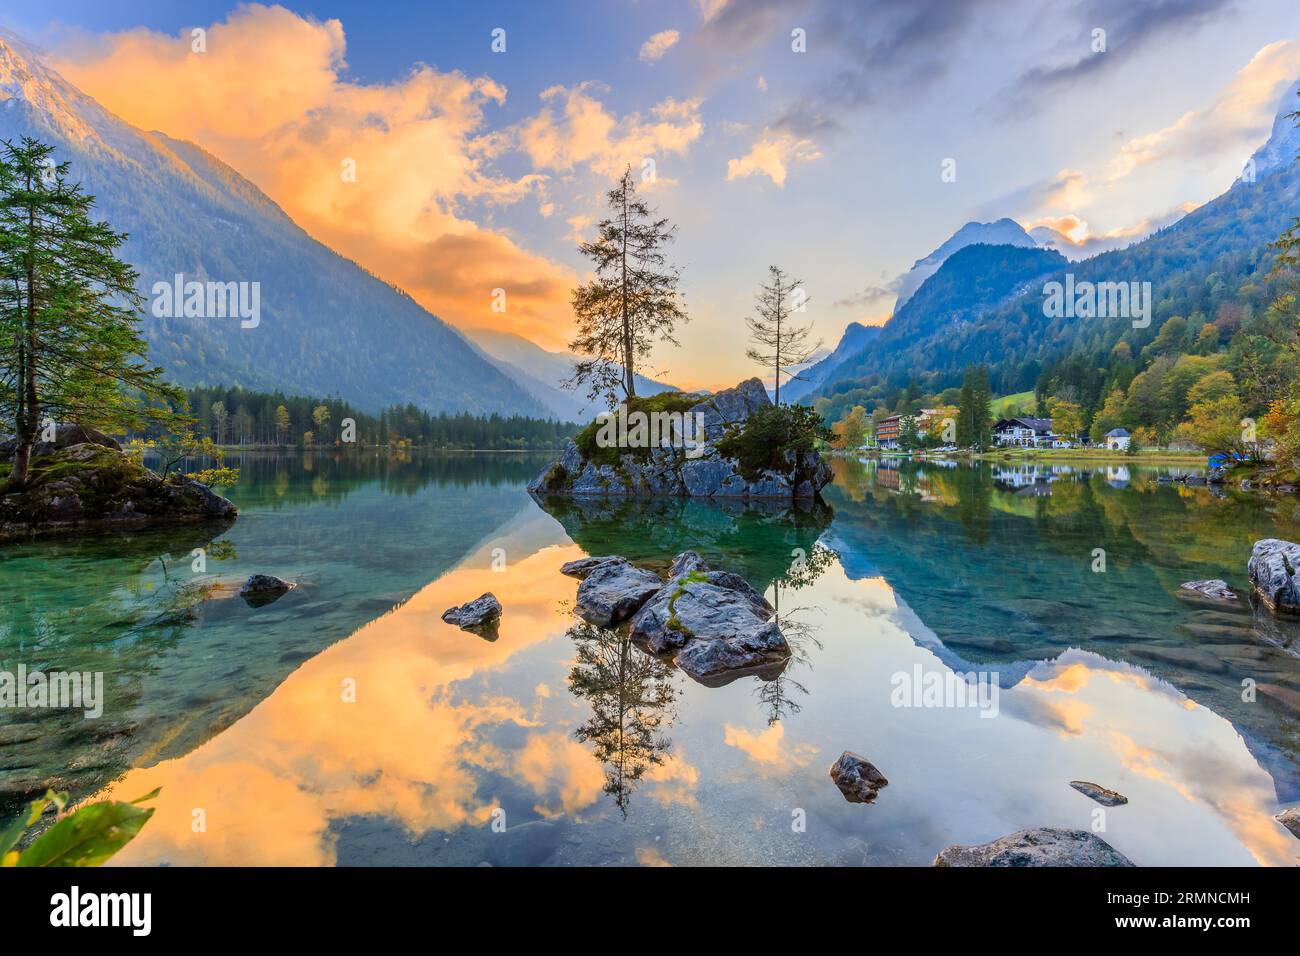 Parc national de Berchtesgaden, Allemagne. Le lac Hintersee et les Alpes bavaroises au lever du soleil. Banque D'Images